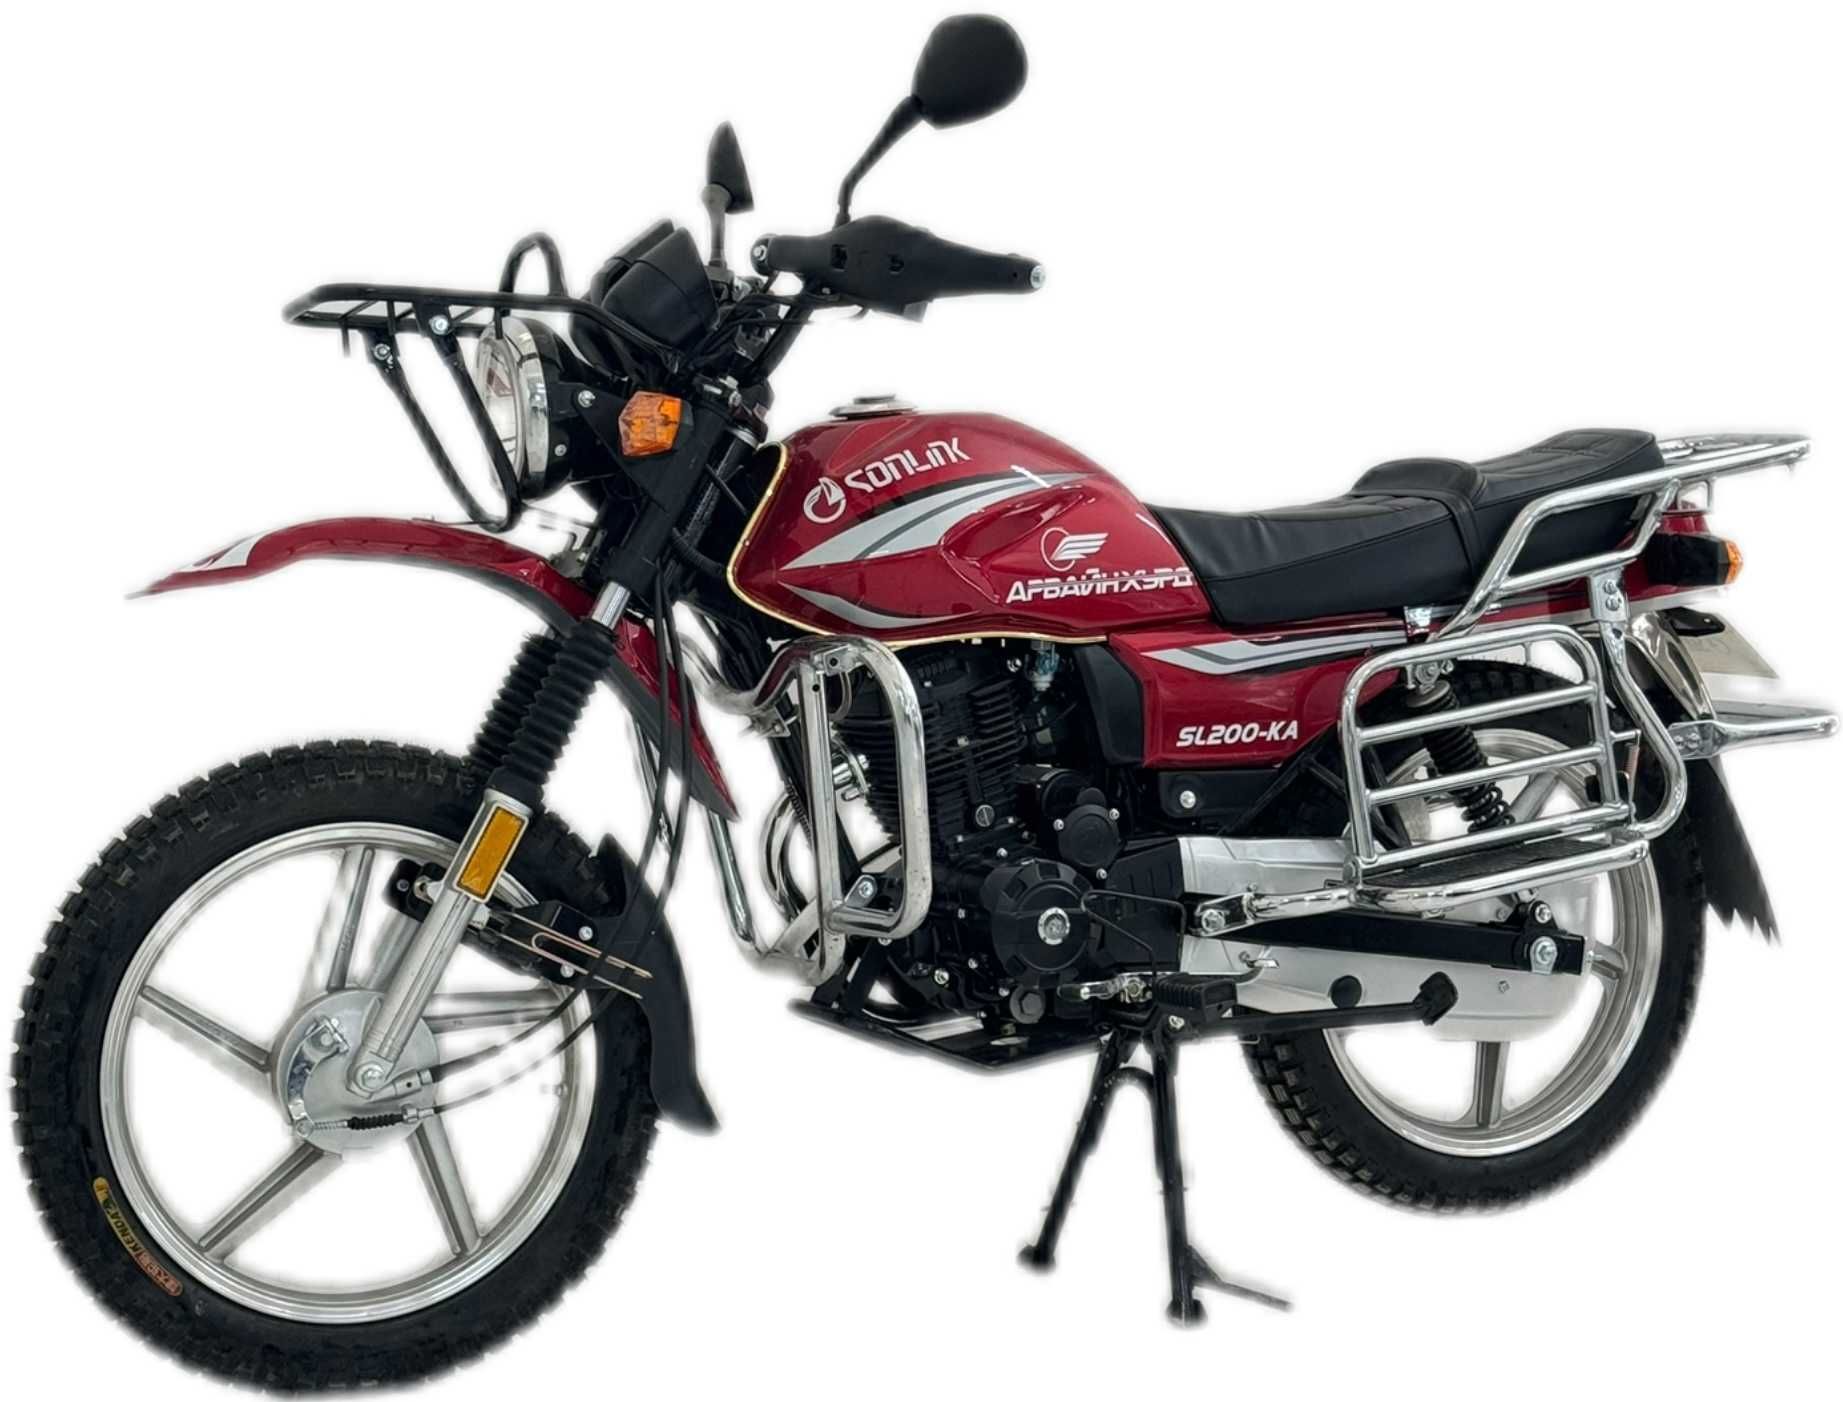 Мотоцикл Сонлинк 200 кубовый; Оригинал мотоцикл Sonlink 200 куб